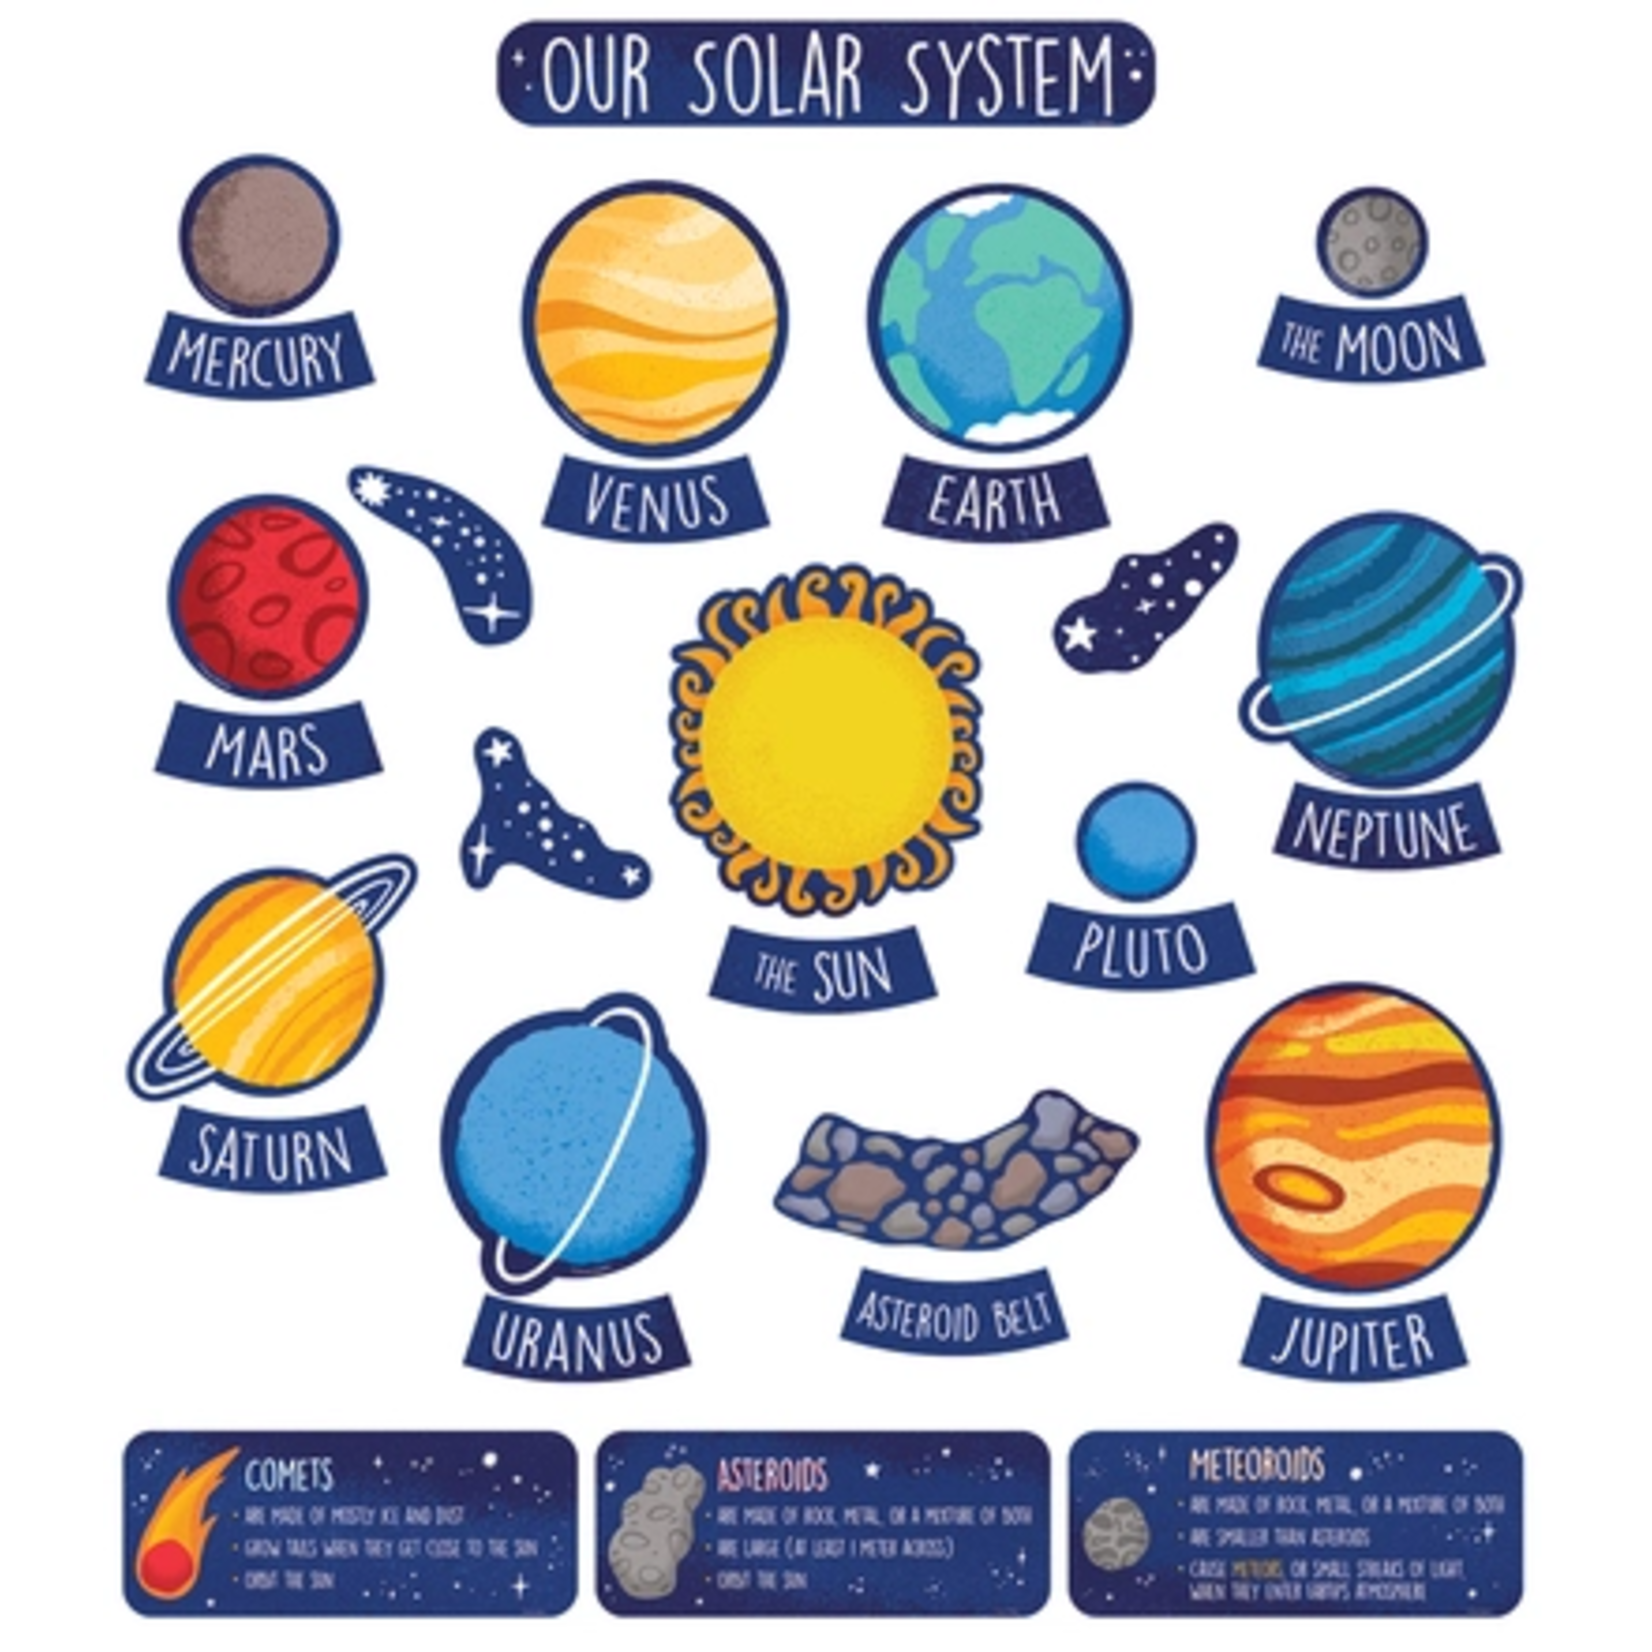 CARSON DELLOSA PUBLISHING CO The Solar System Bulletin Board Set Grade 1-5